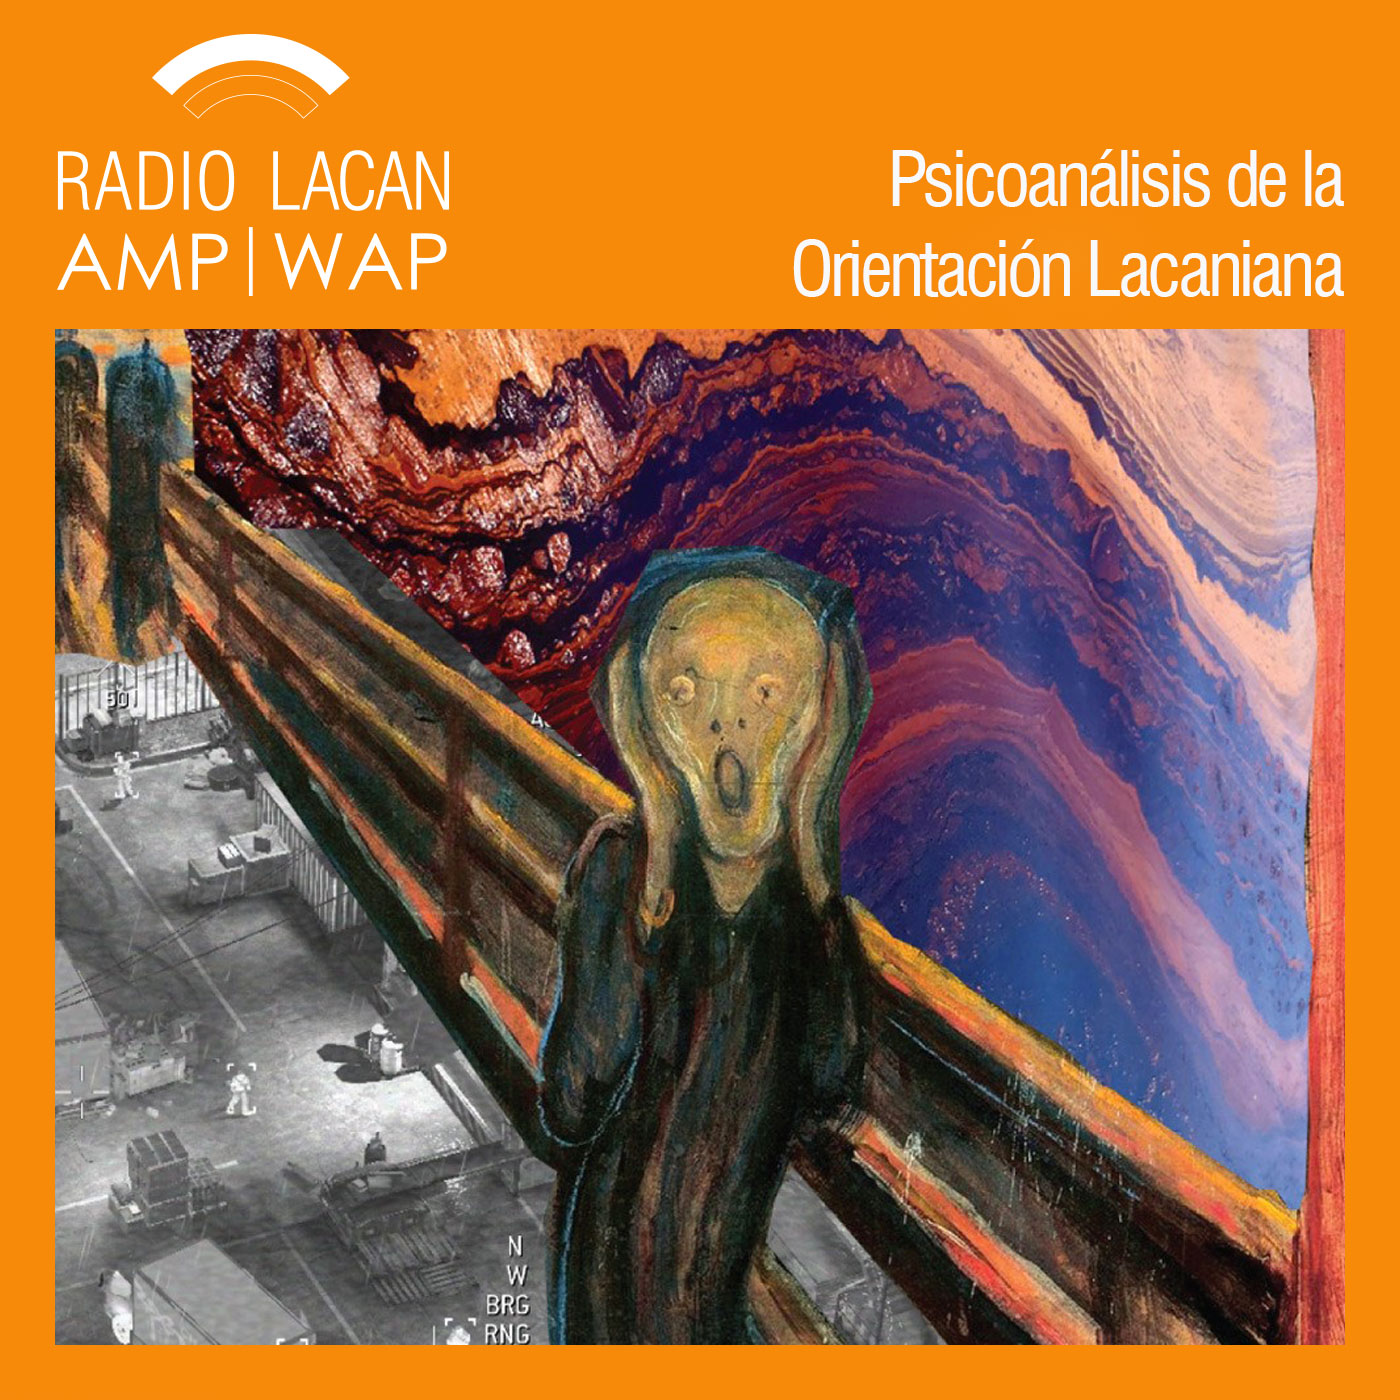 RadioLacan.com | Conferencia de Jorge Assef en el CUNY: Miedo: detalles clínicos de una epidemia silenciosa, invitado por La